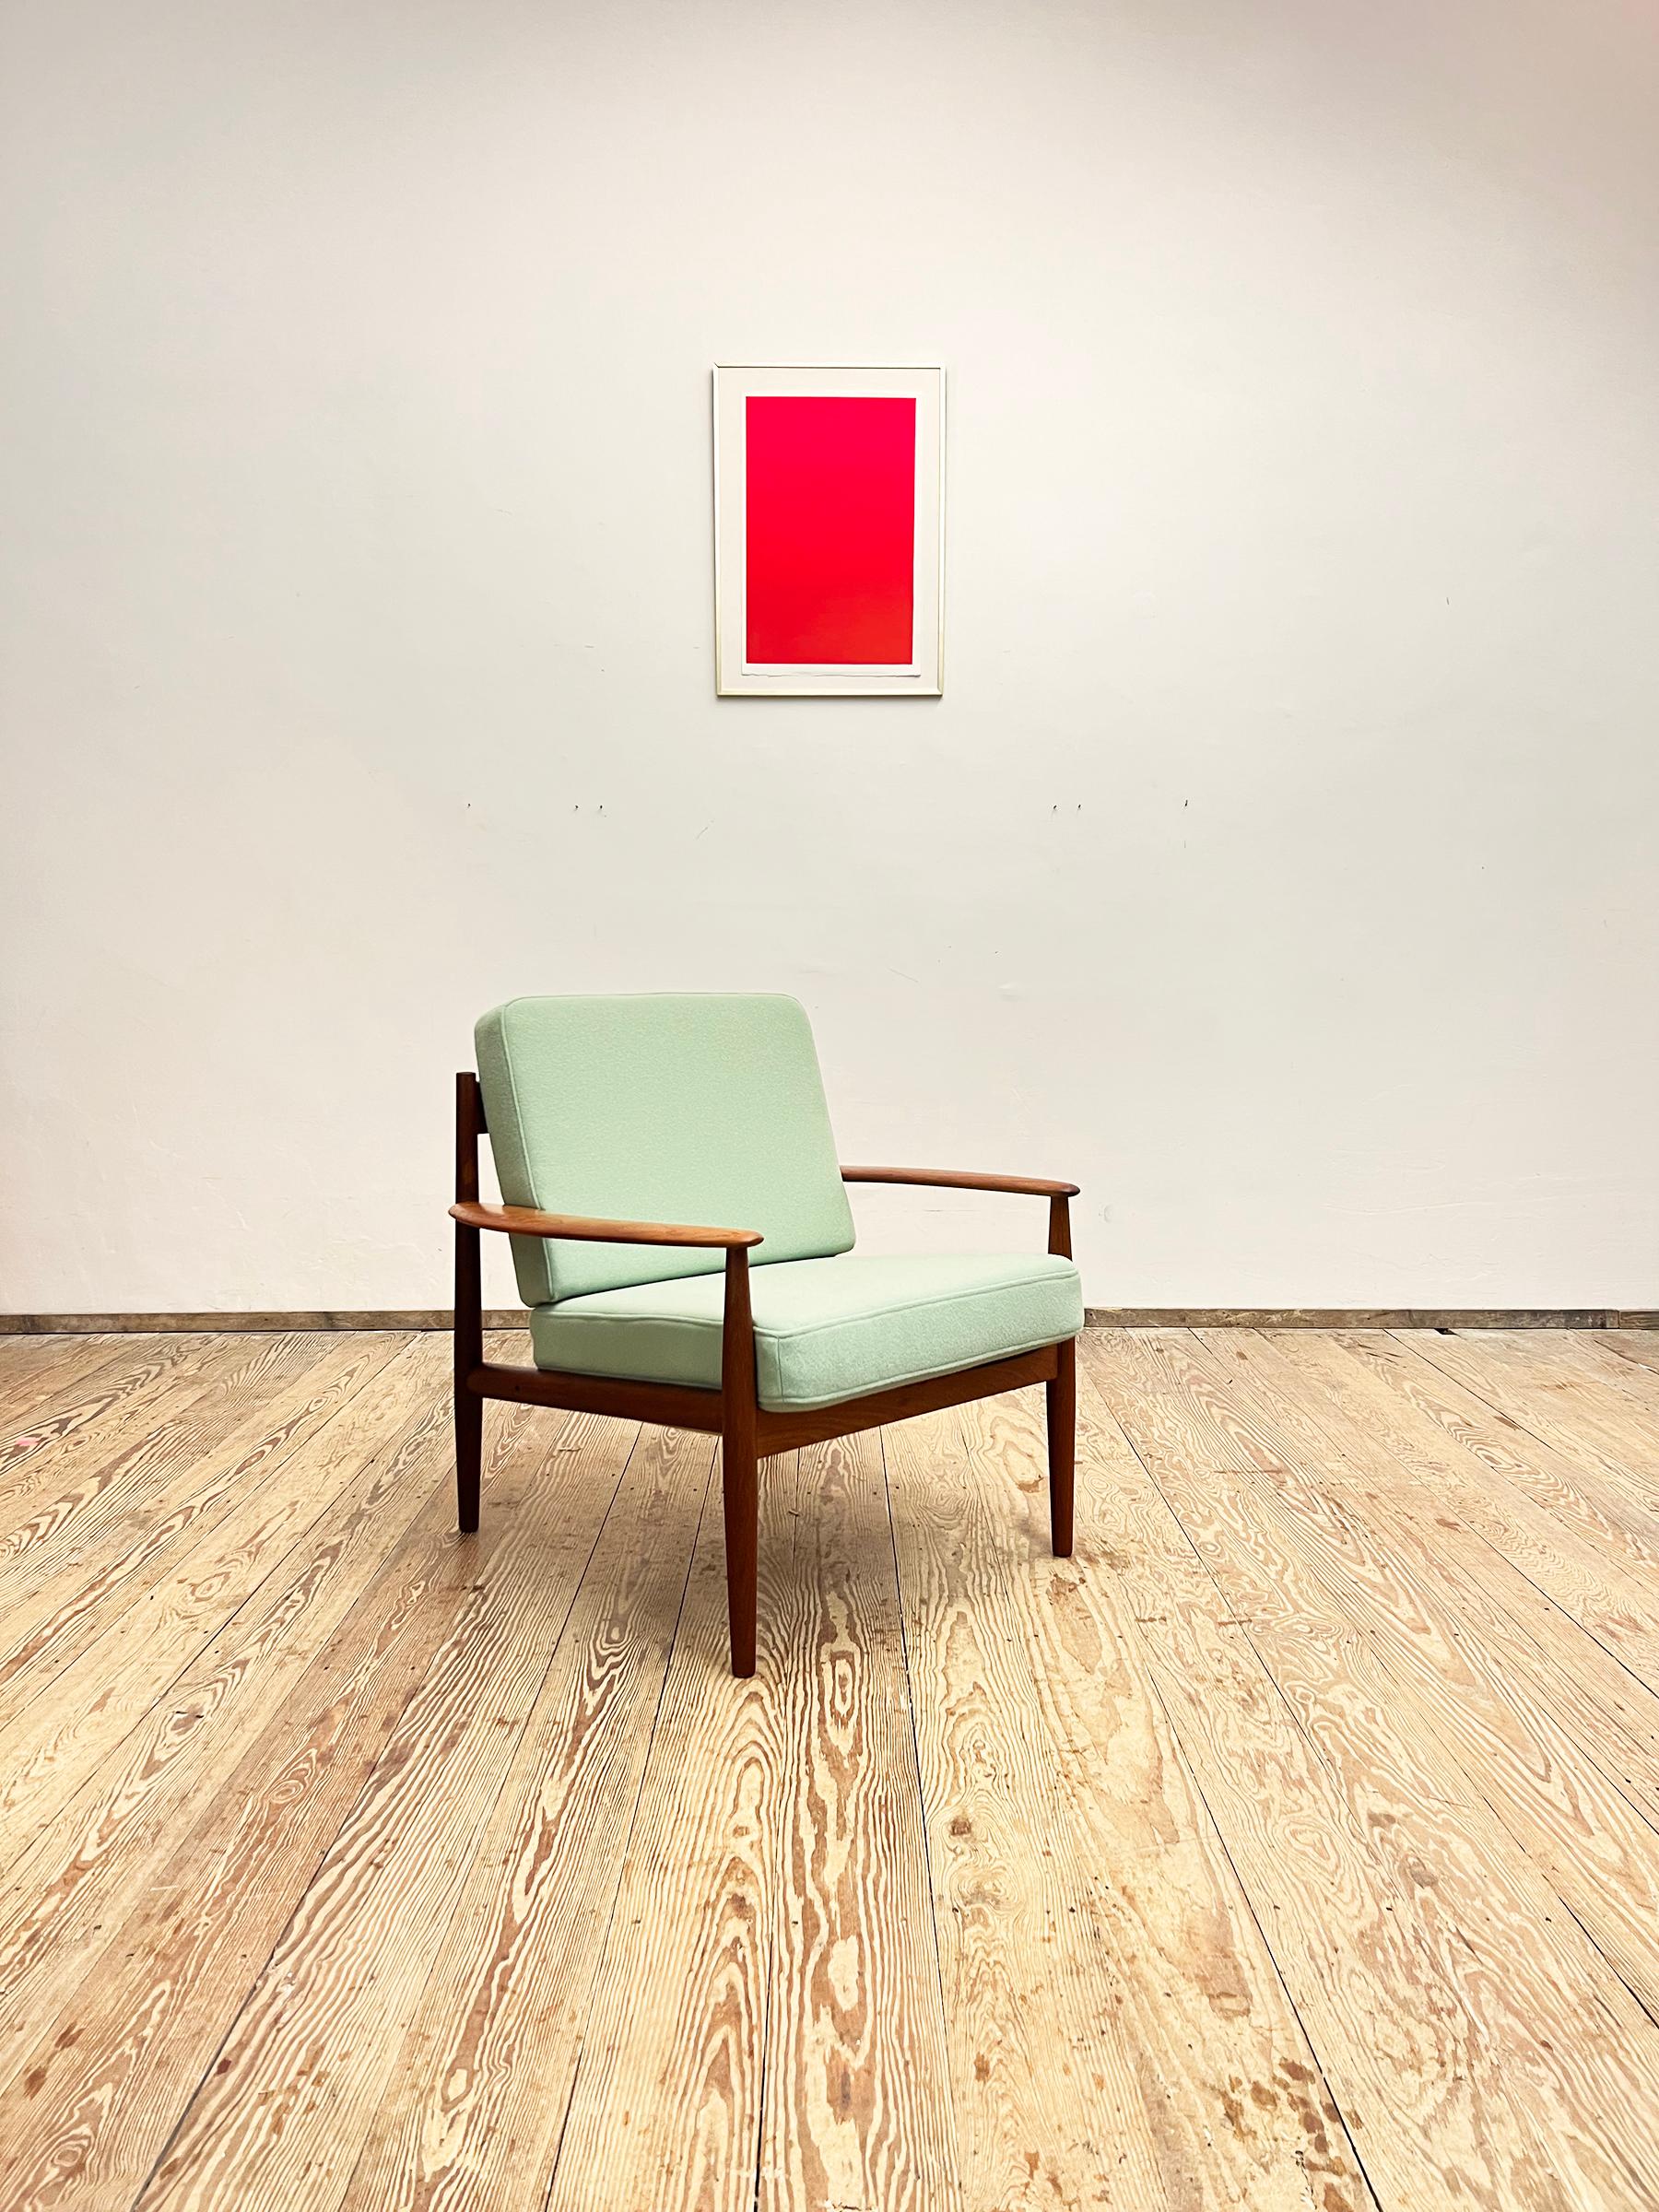 Abmessungen: 73 x 75 x 77 cm (Breite x Höhe x Tiefe)

Dieser schöne Loungesessel wurde in den 1950er Jahren von Grete Jalk für France and Son in Dänemark entworfen. Die elegante Form und die fragilen Proportionen machen diesen Sessel zu einem der